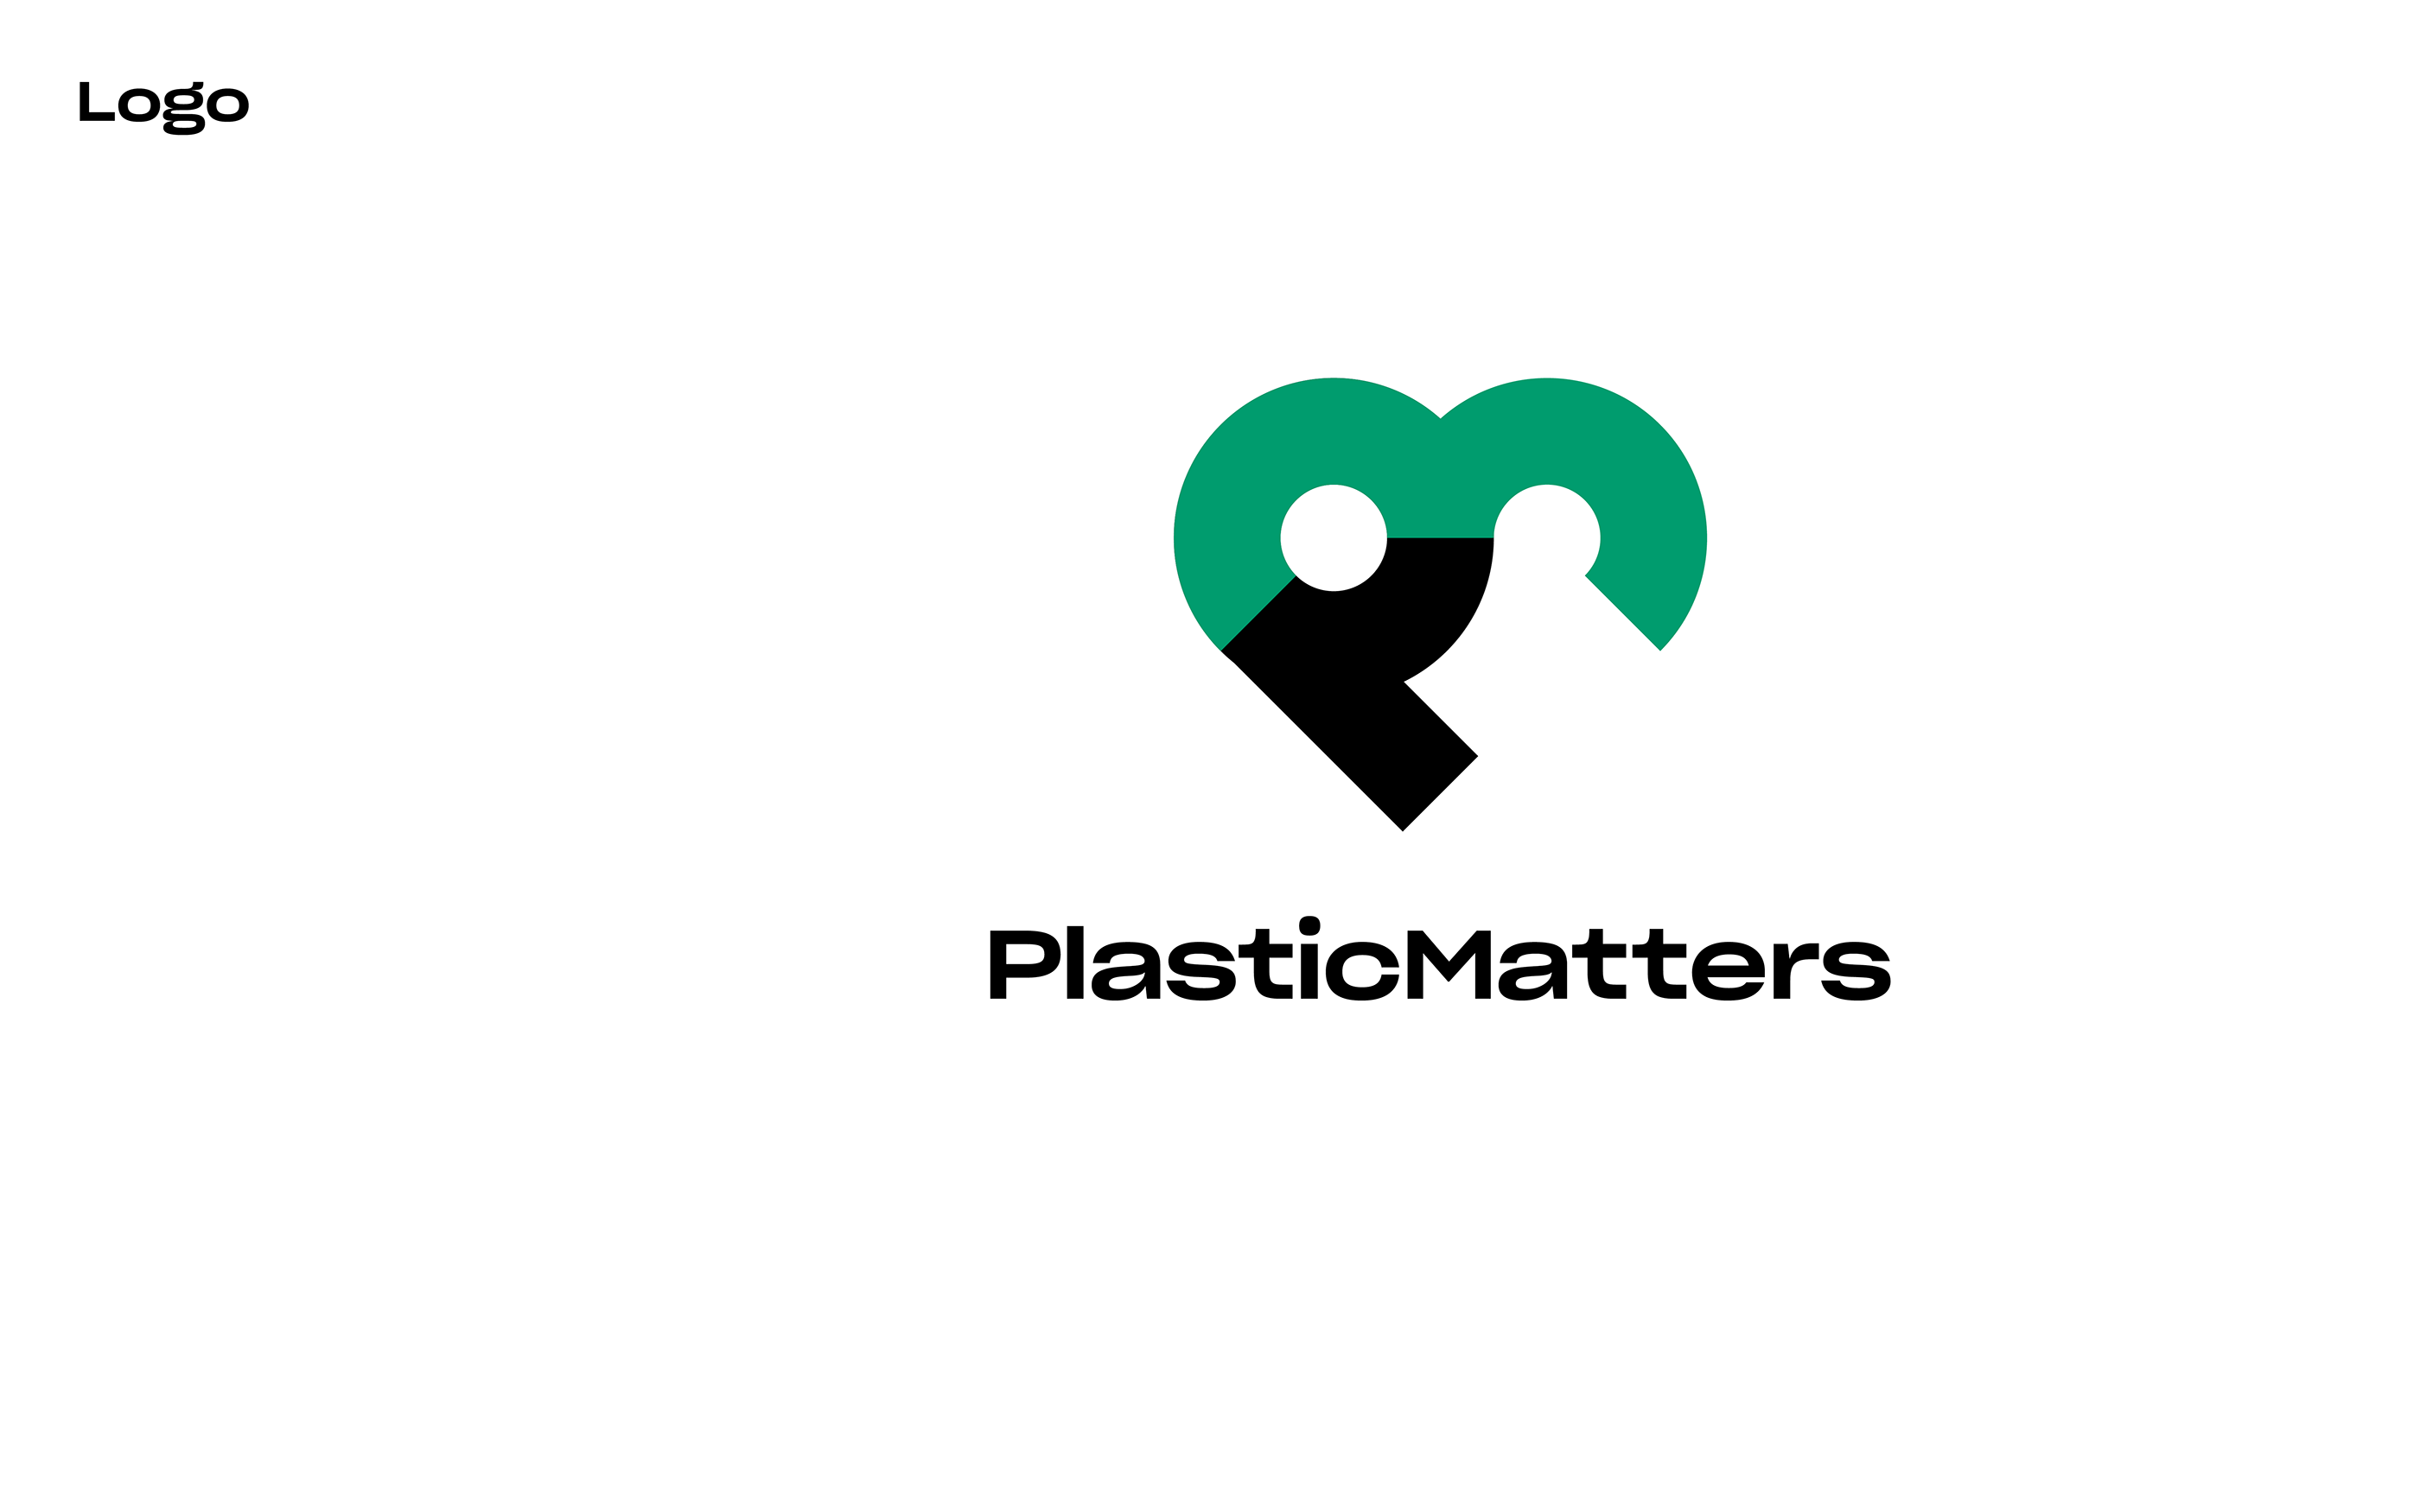 Plastic Matters on Behanceb95e2960235019.5a43628011fbc.png